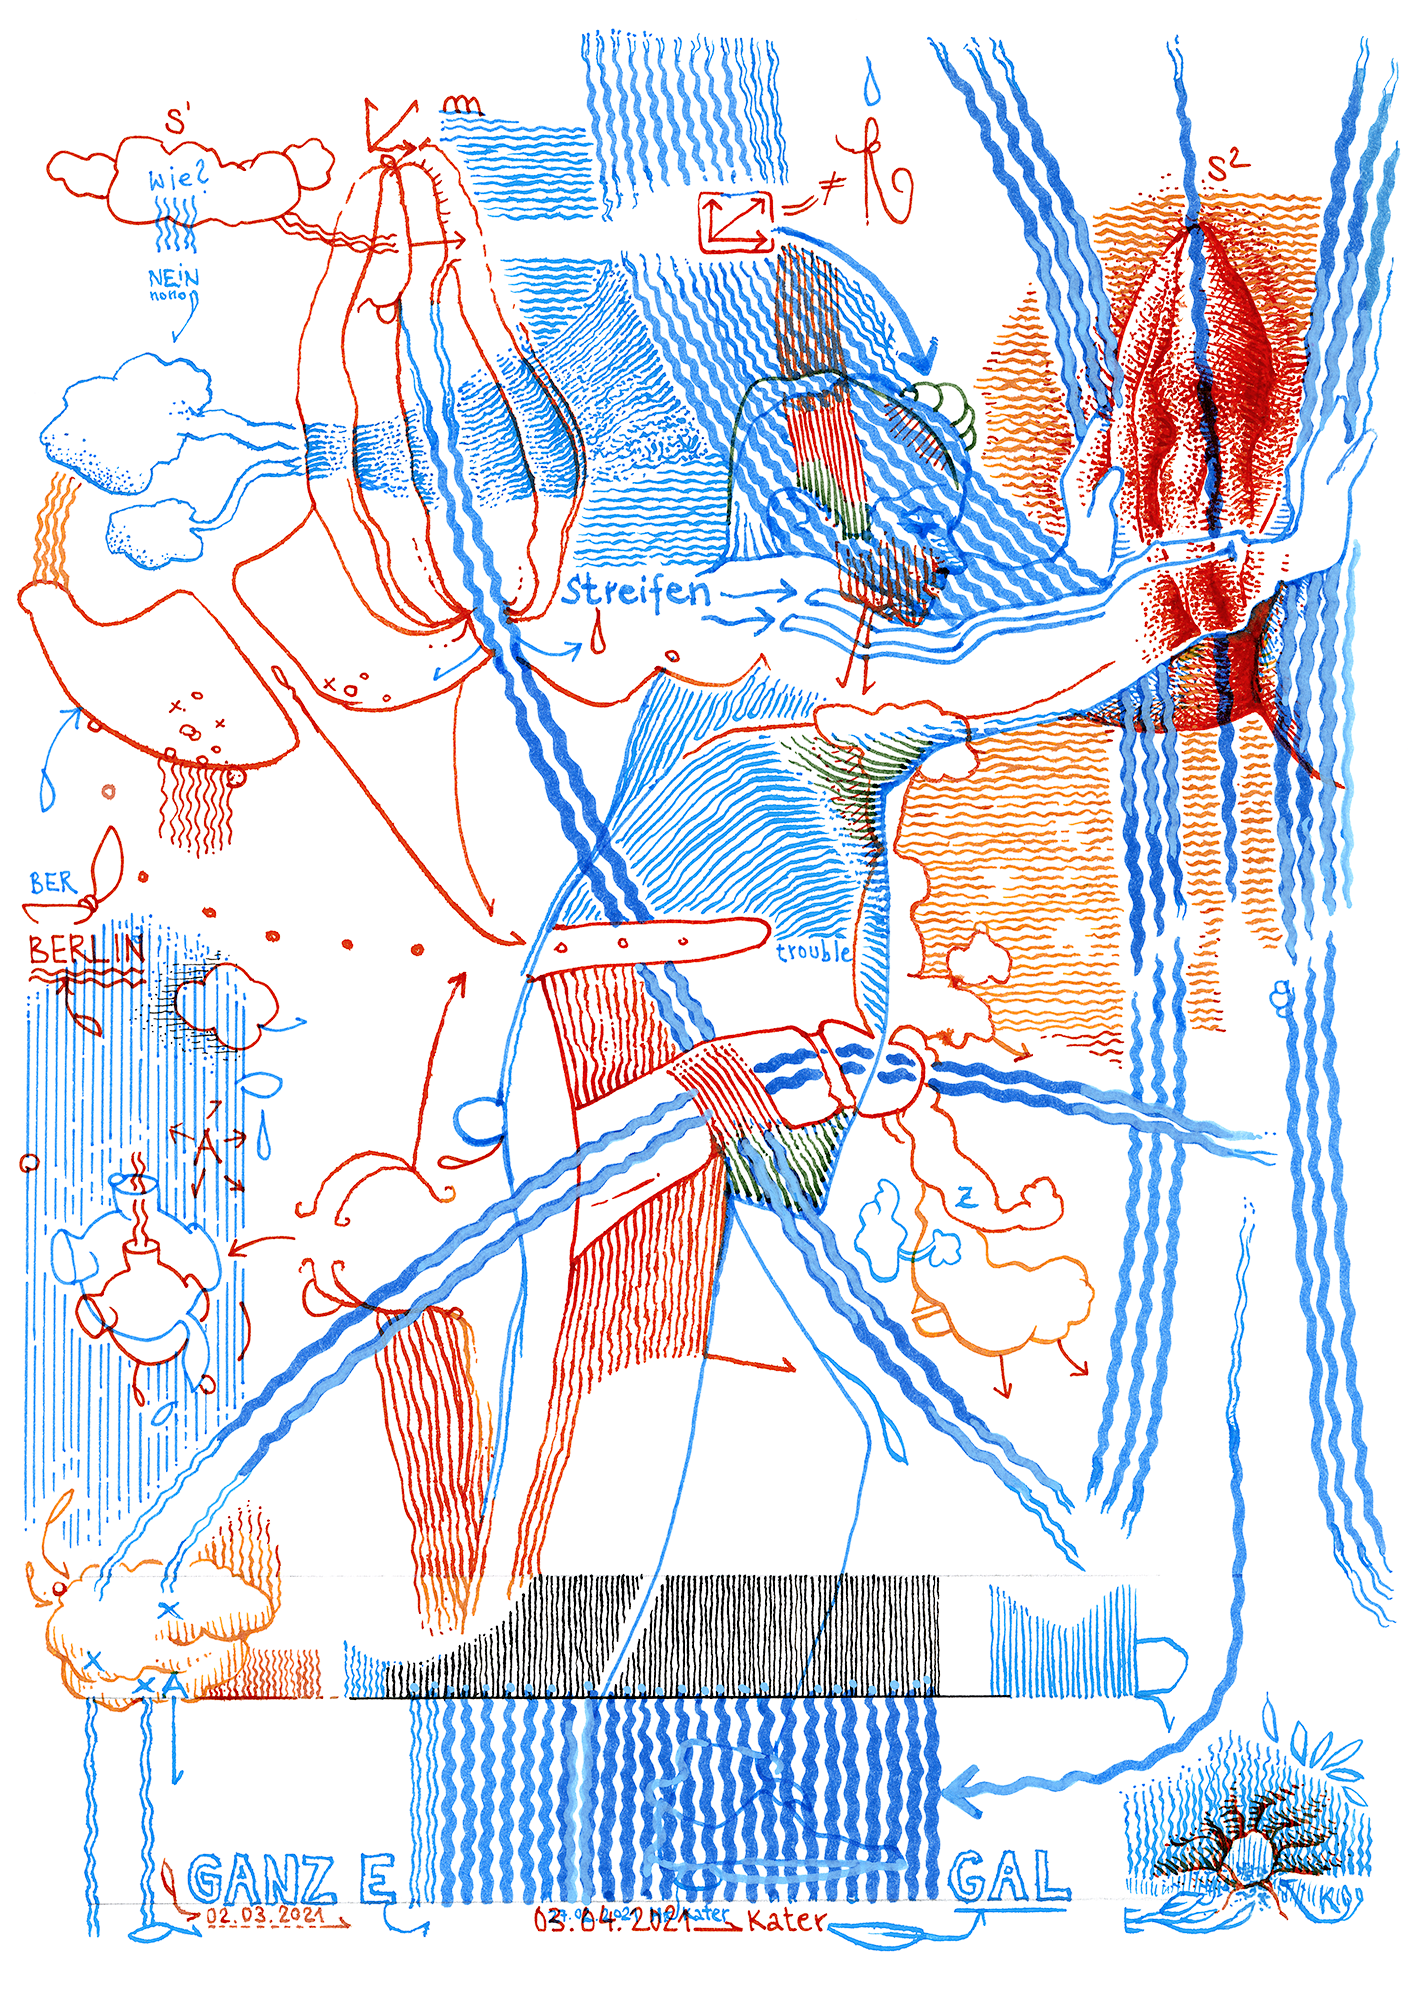 Hannes Kater: Tageszeichnung (Zeichnung/drawing) vom 03.04.2021 (1414 x 2000 Pixel)